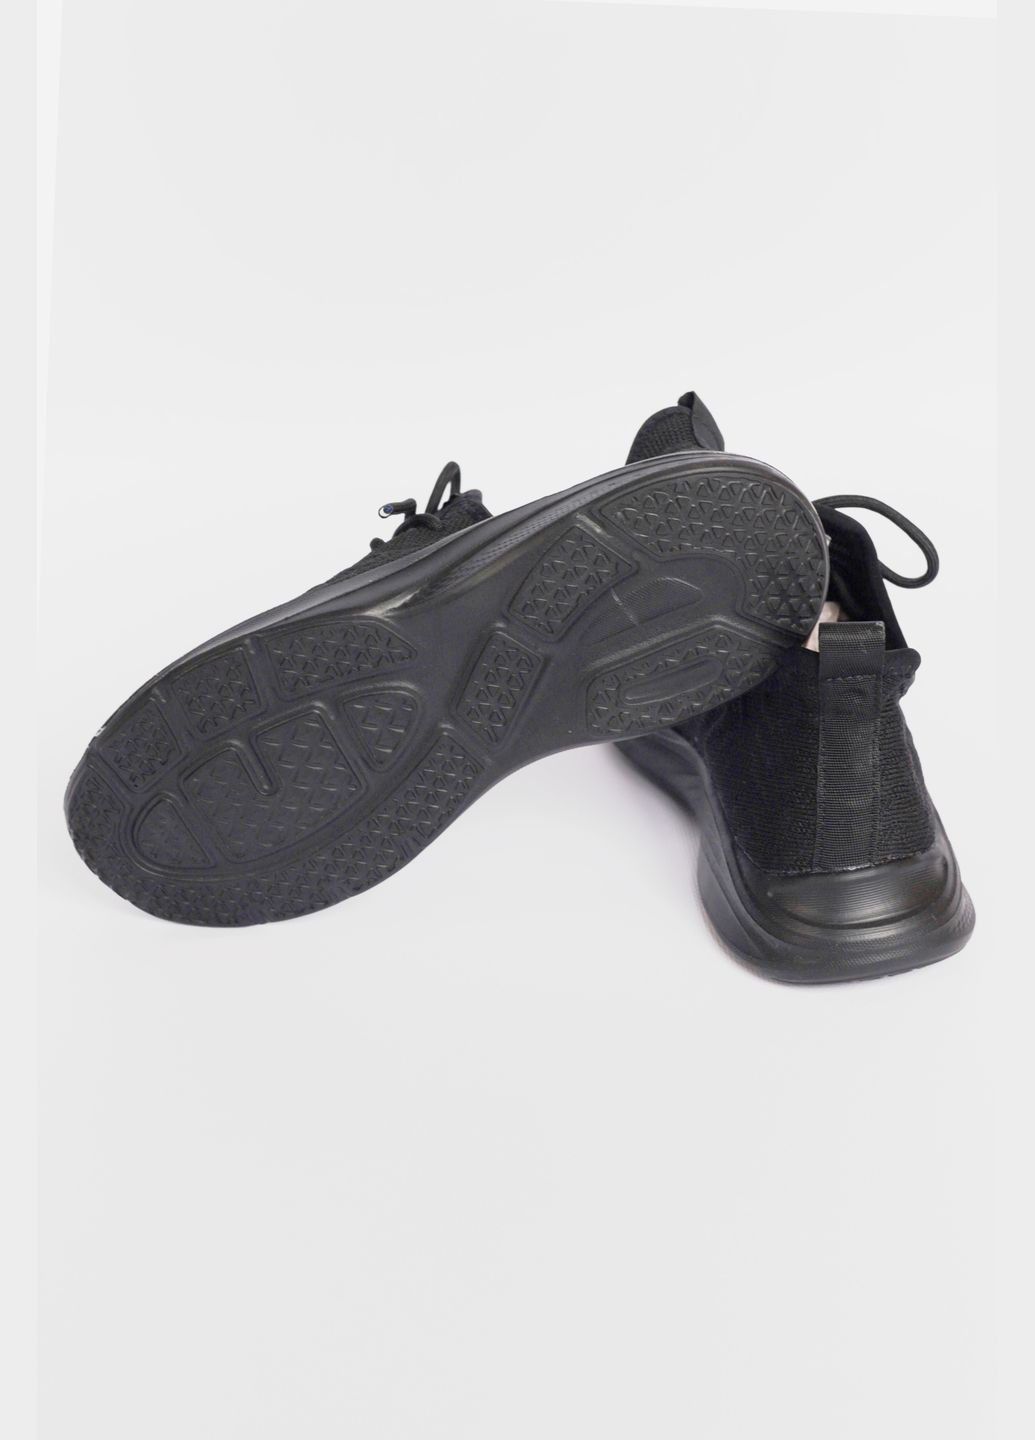 Чорні осінні кросівки жіночі текстиль чорного кольору на шнурiвцi Let's Shop